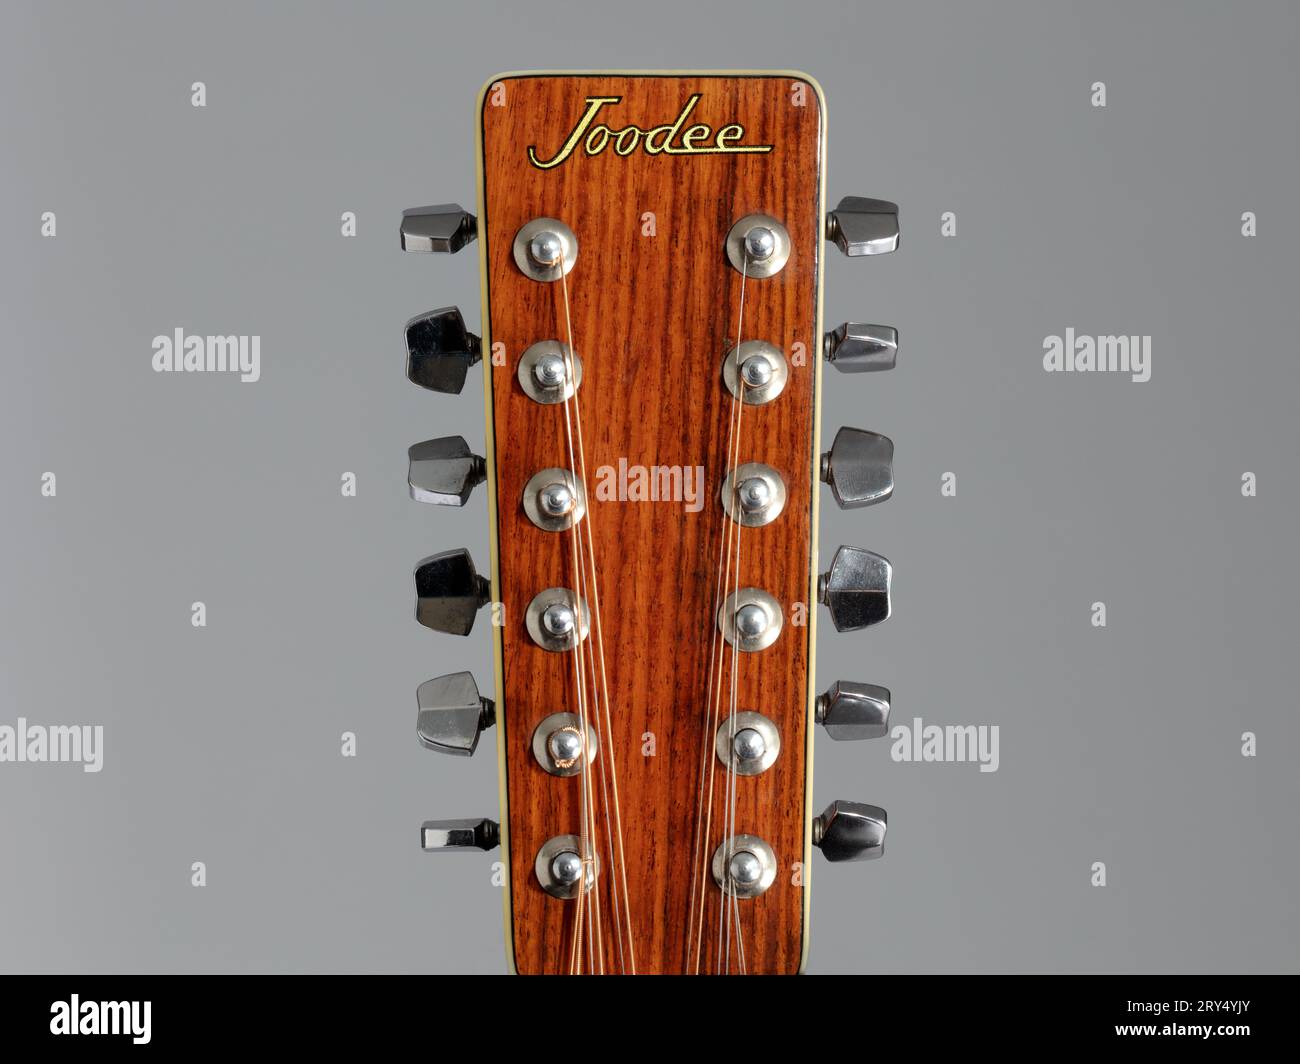 Nahaufnahme des Joodee akustischen 12-saitigen Gitarrenkopfstocks auf grauem Hintergrund Stockfoto